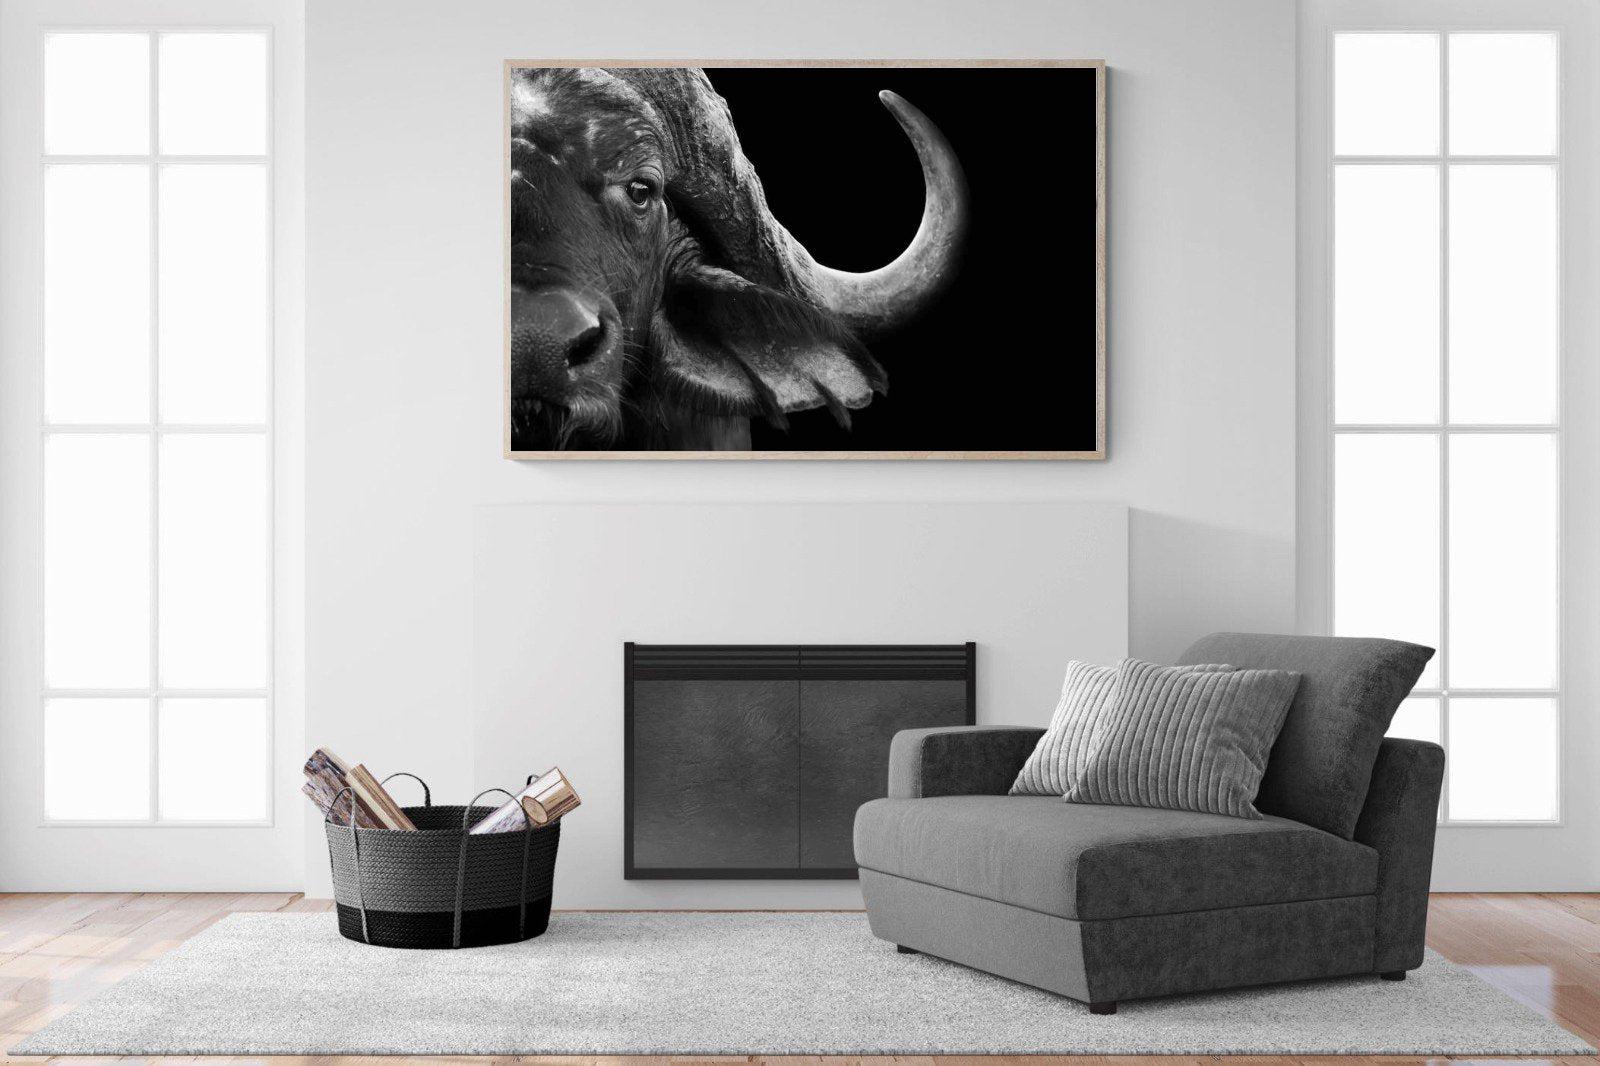 Water Buffalo-Wall_Art-150 x 100cm-Mounted Canvas-Wood-Pixalot